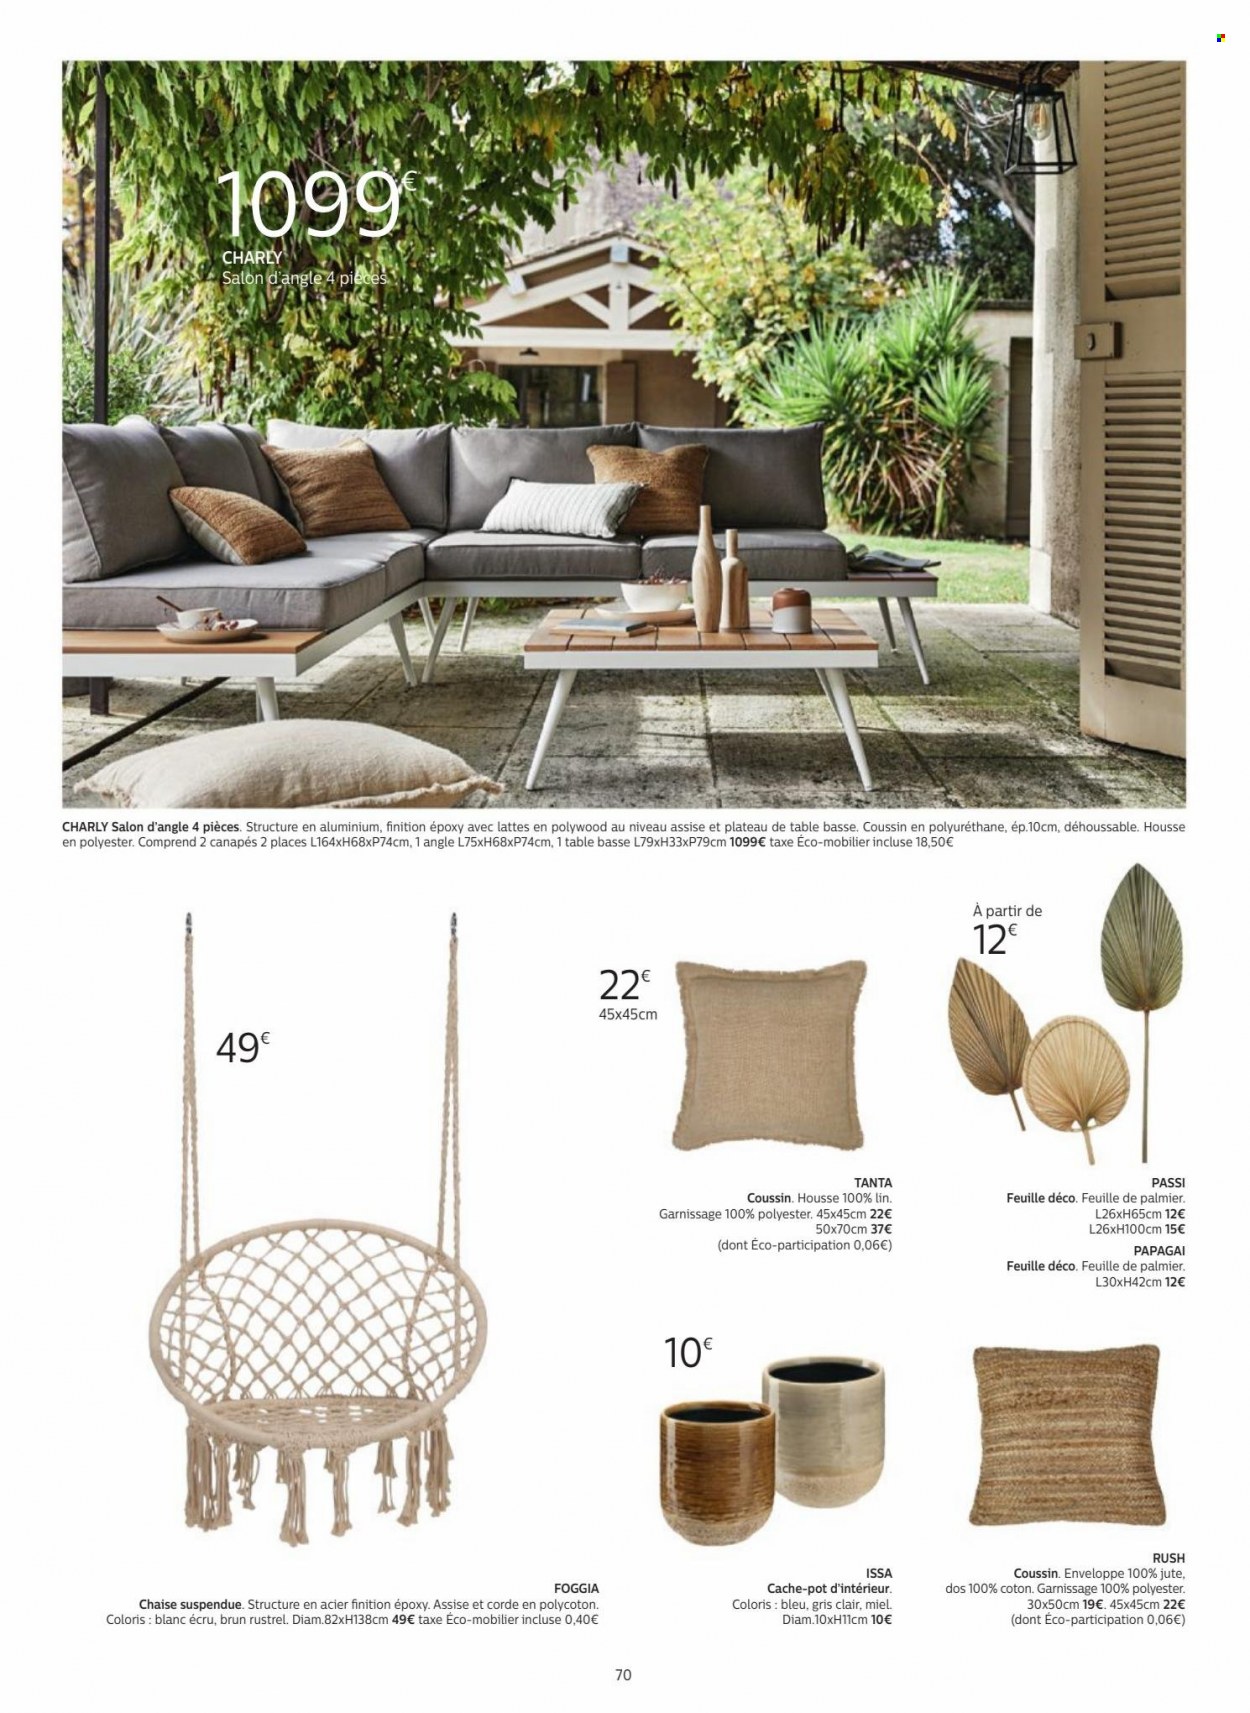 thumbnail - Catalogue alinea - Produits soldés - chaise, canapé, salon de jardin, pot de fleurs. Page 70.